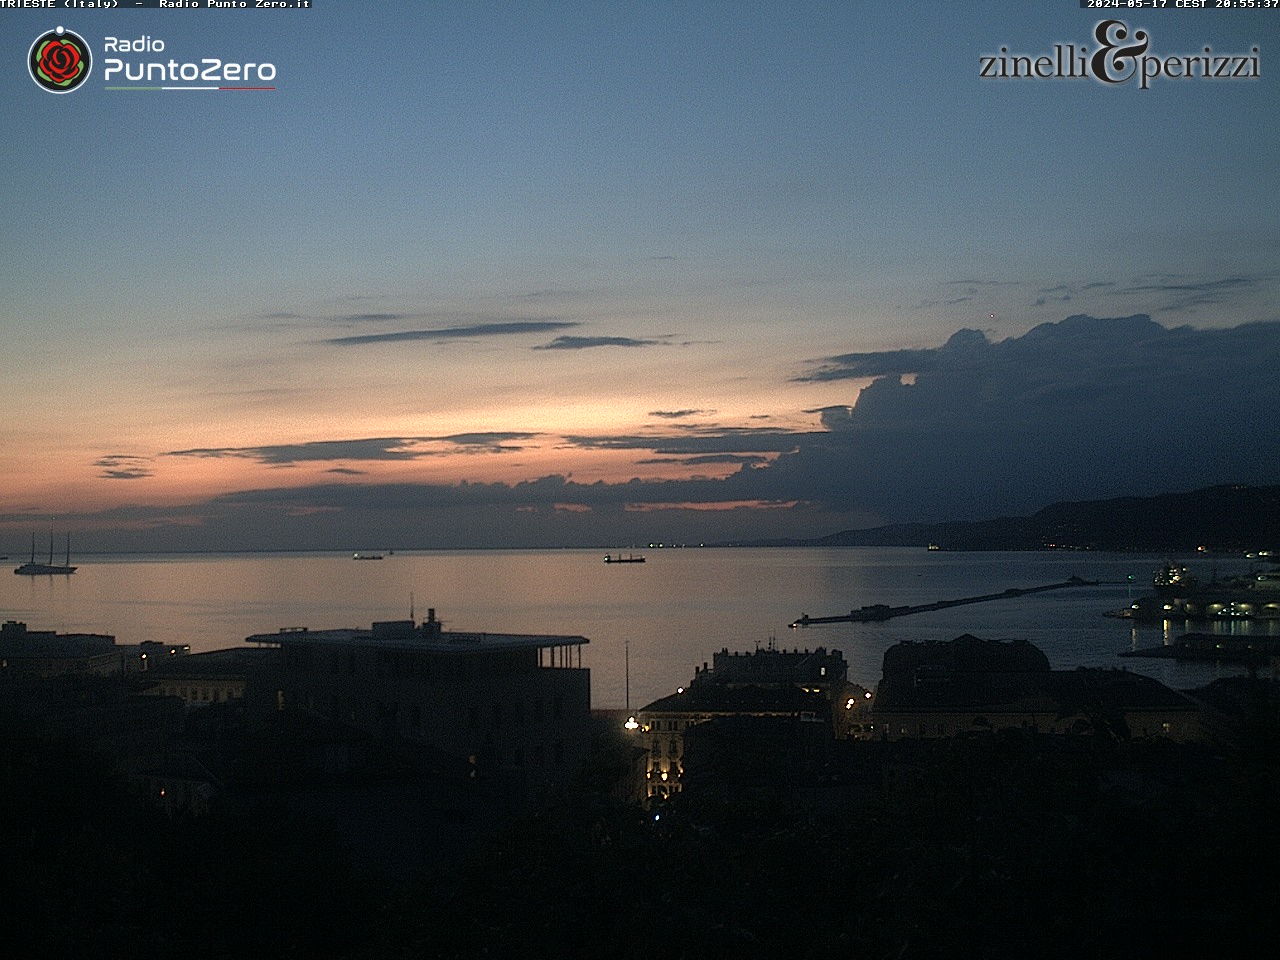 Trieste Di. 04:51